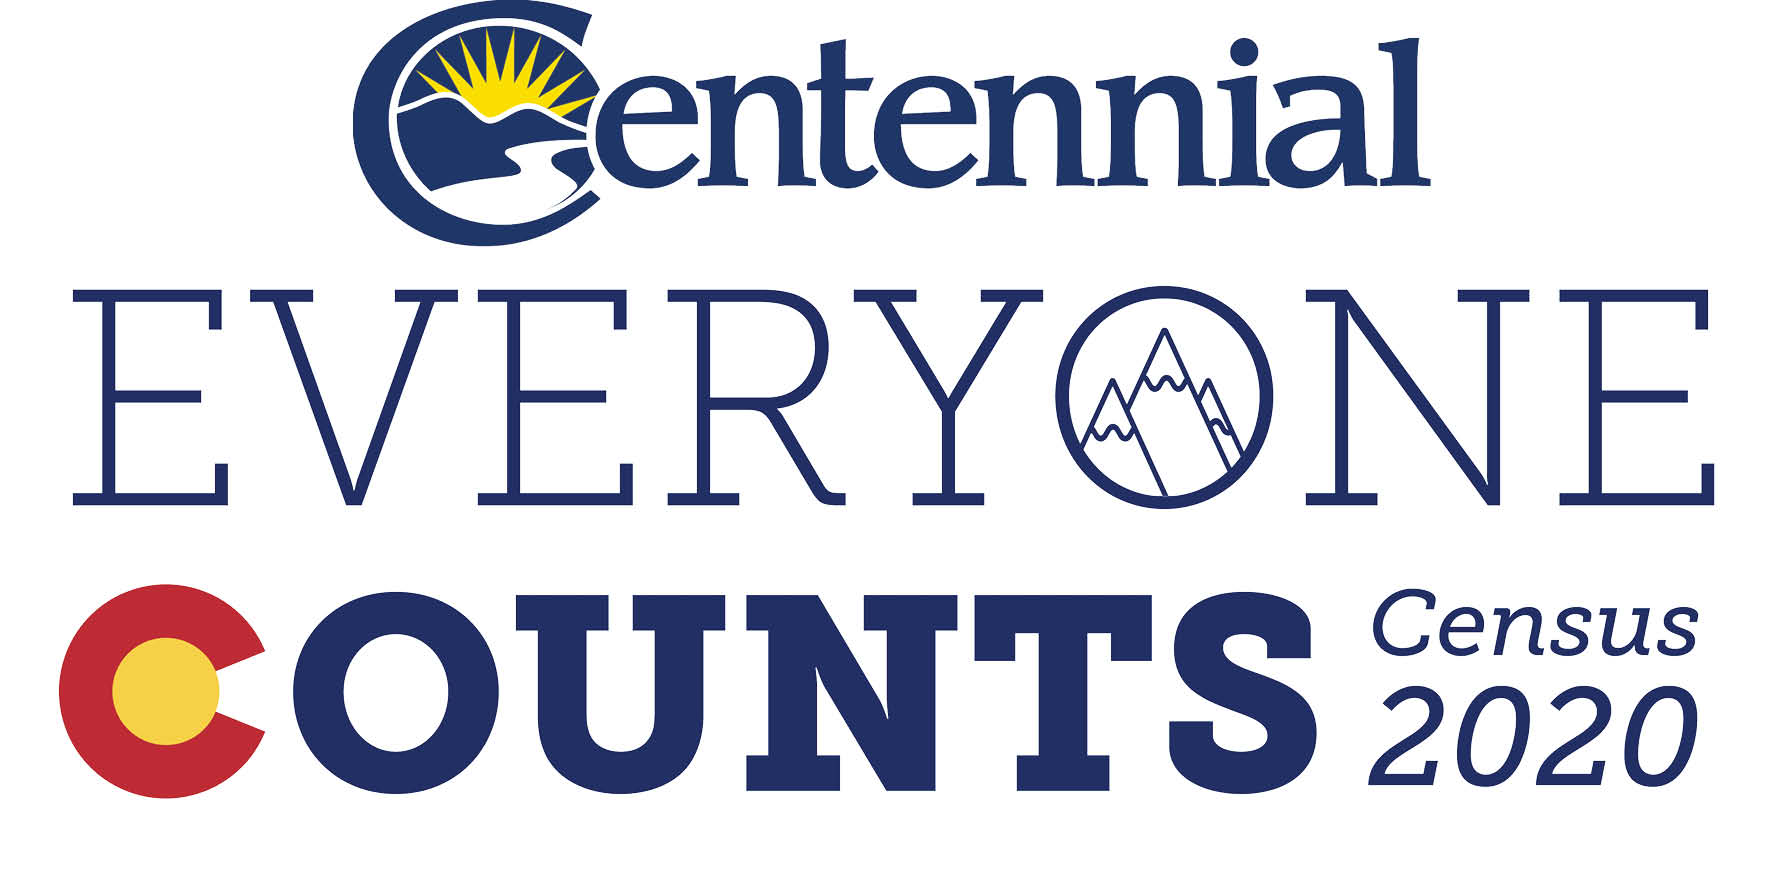 centennial census logo